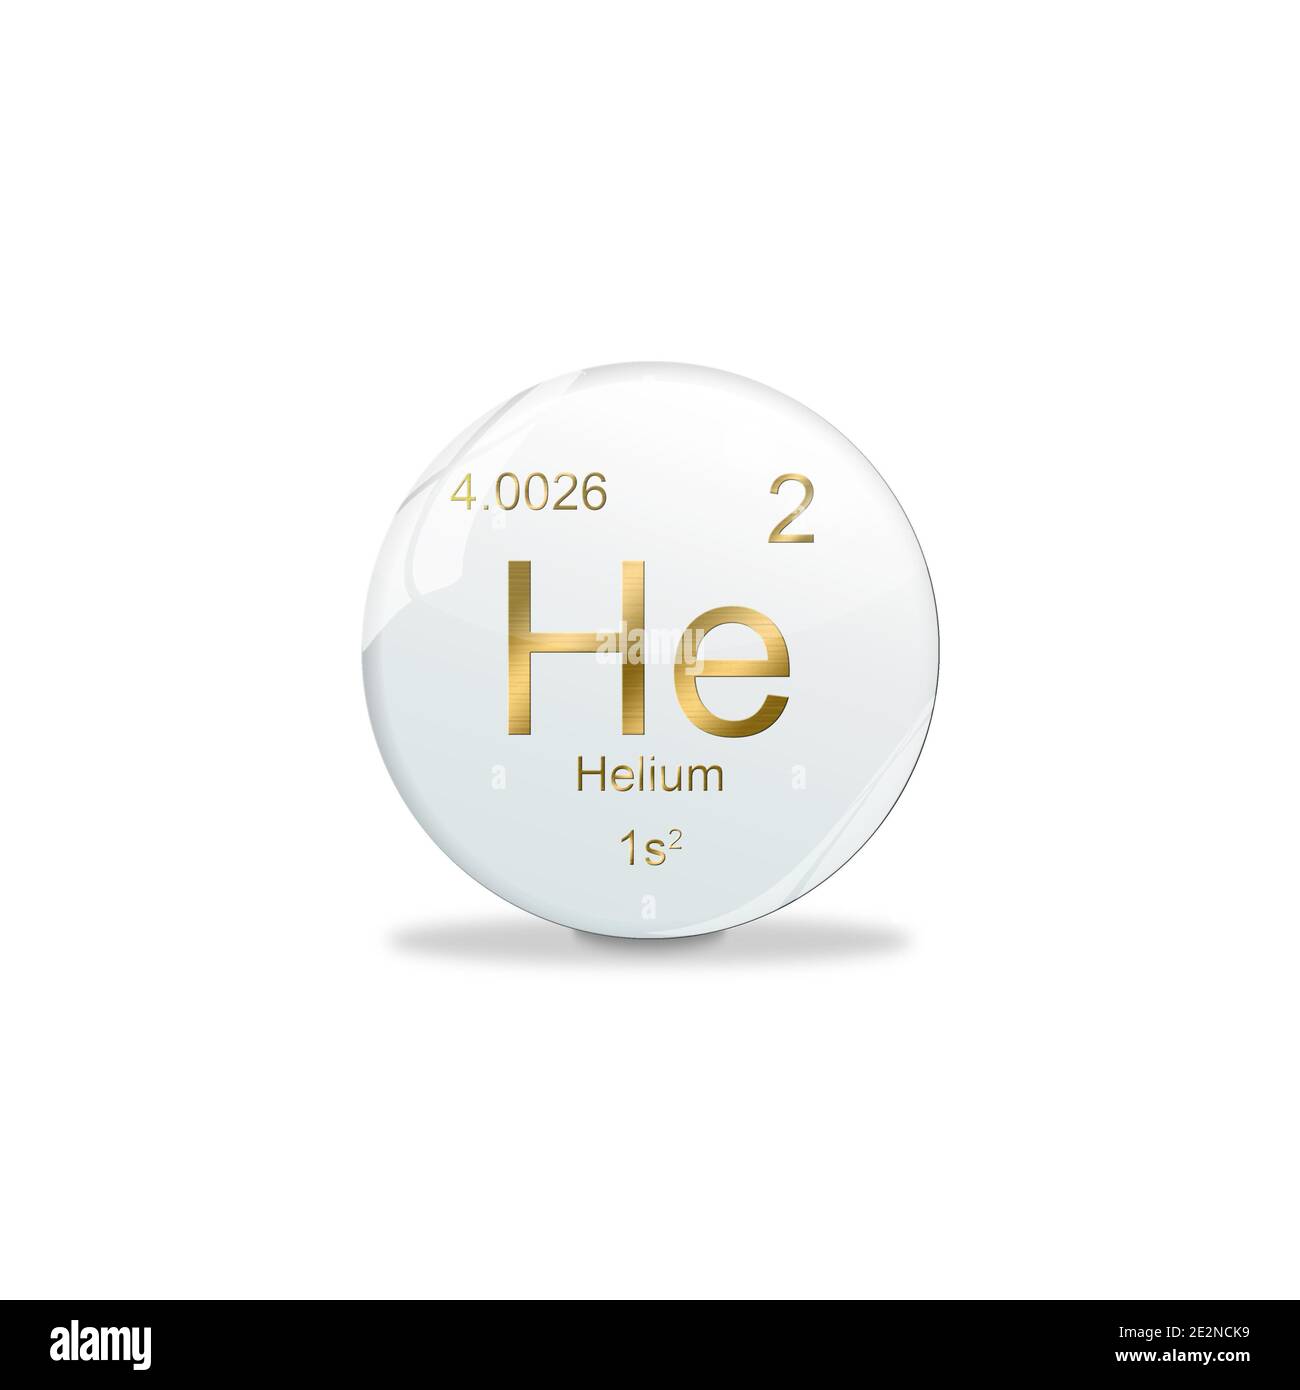 Helium-Symbol - He. Element des Periodensystems auf der weißen Kugel mit goldenen Zeichen. Weißer Hintergrund Stockfoto